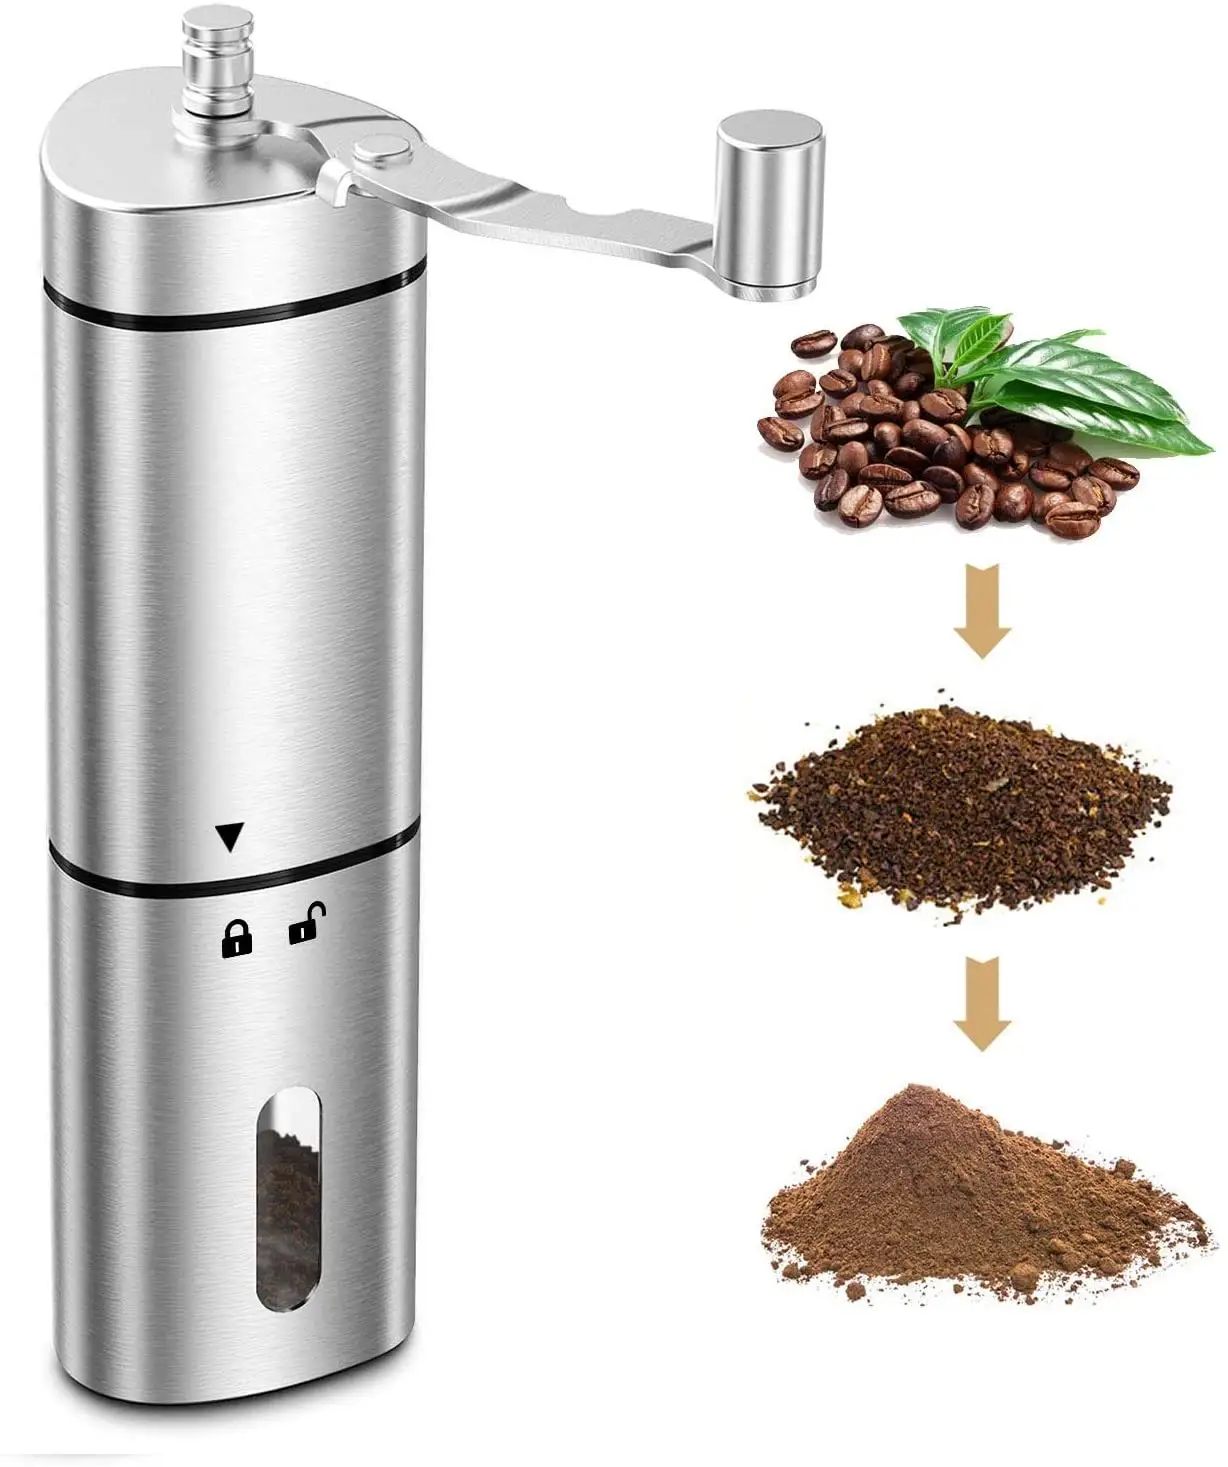 Popüler kırmızı fasulye değirmeni ayarlanabilir ayar manuel kahve değirmeni ile taşınabilir el paslanmaz çelik kahve değirmeni